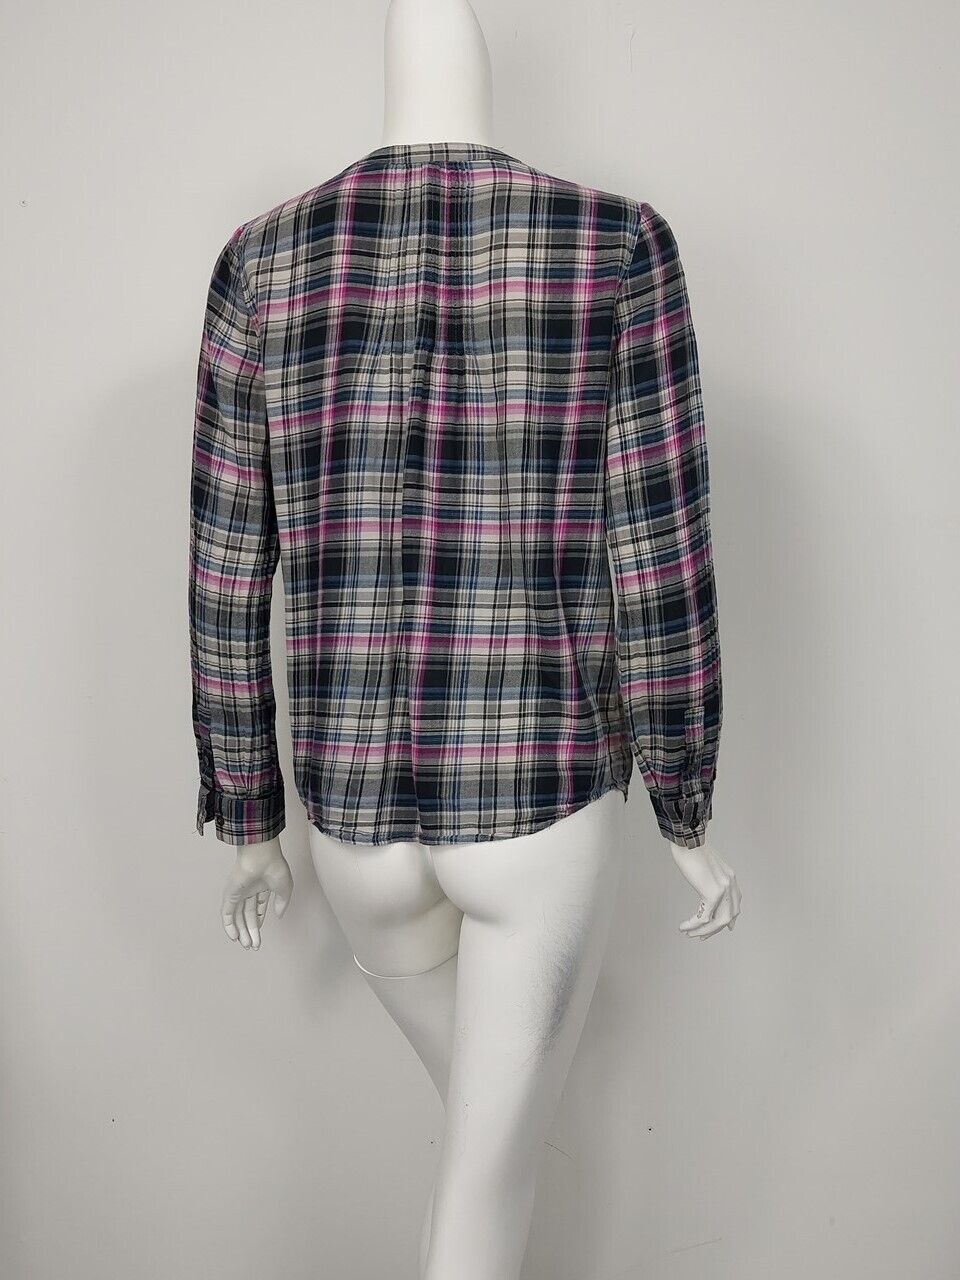 JOIE Black Pink Blue White Plaid Cotton Flannel P… - image 3